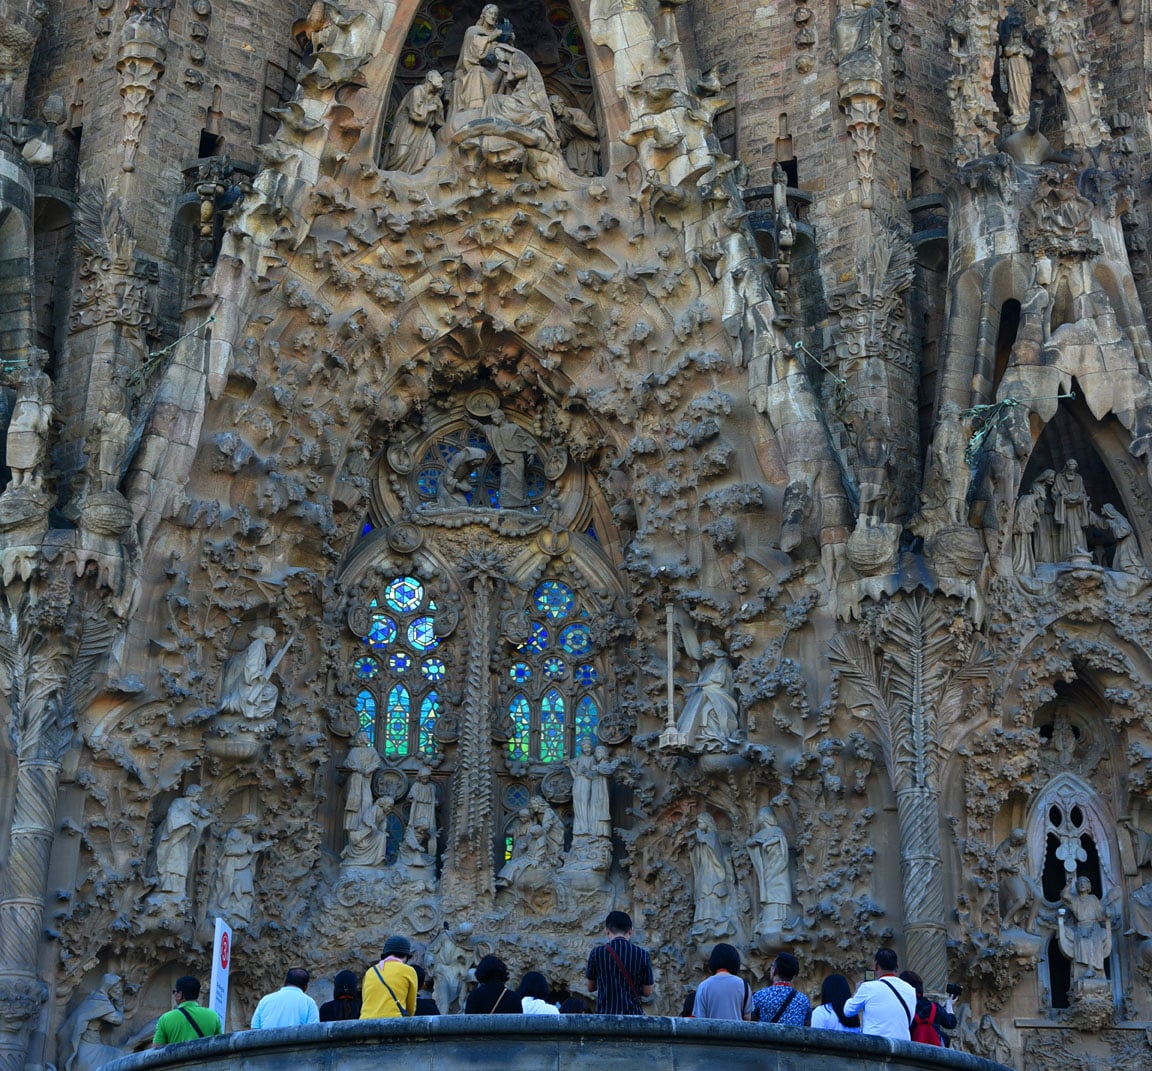 The bizarrely beautiful facade of La Sagrada Familia. Photo: Sugato Mukherjee